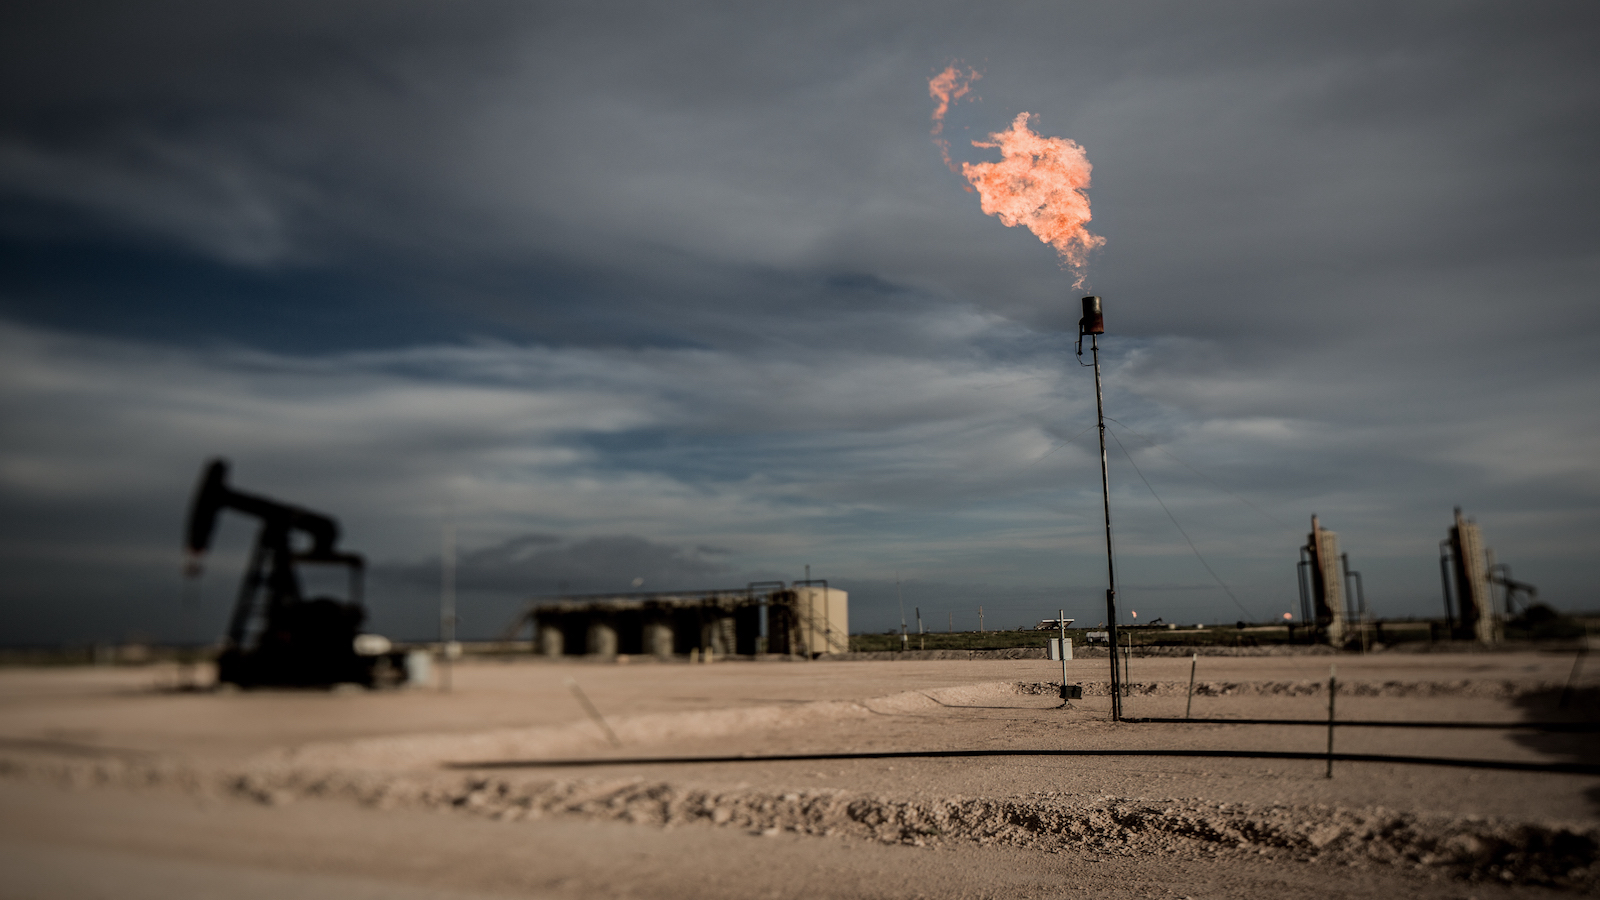 EPA takes steps to curb methane emissions - Environment America